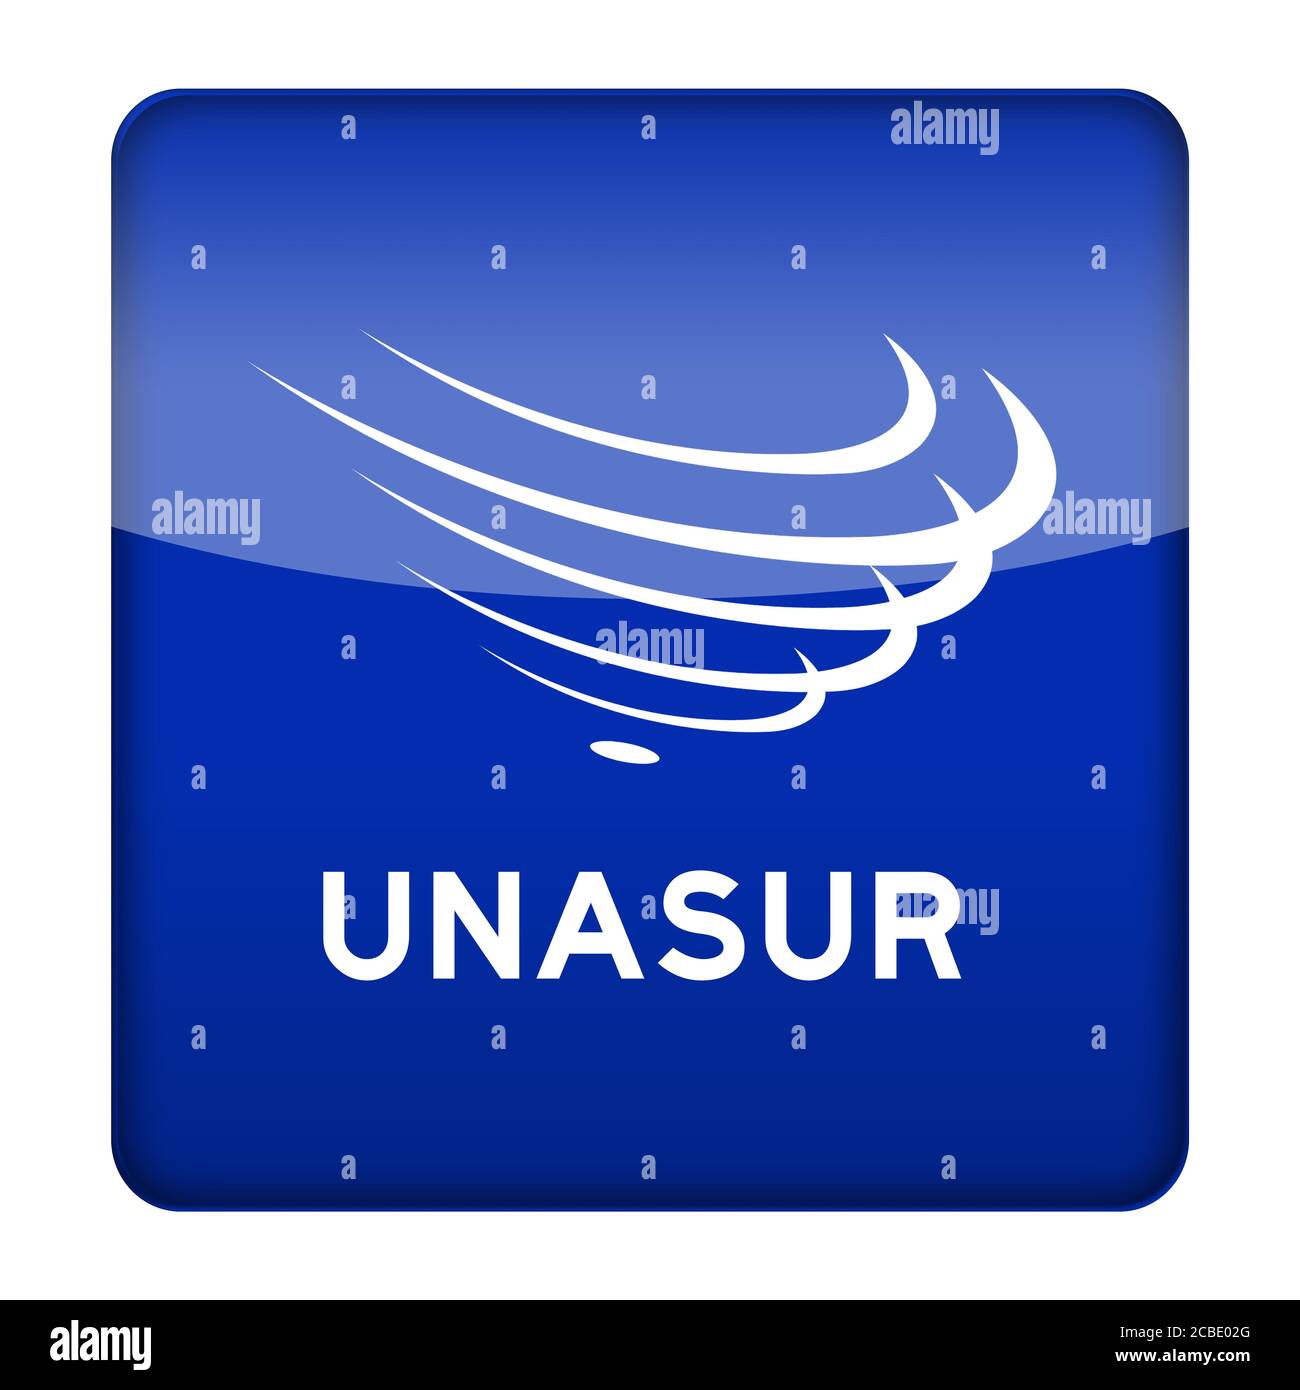 Union des nations de l'Amérique du Sud, l'UNASUR logo USAN Banque D'Images